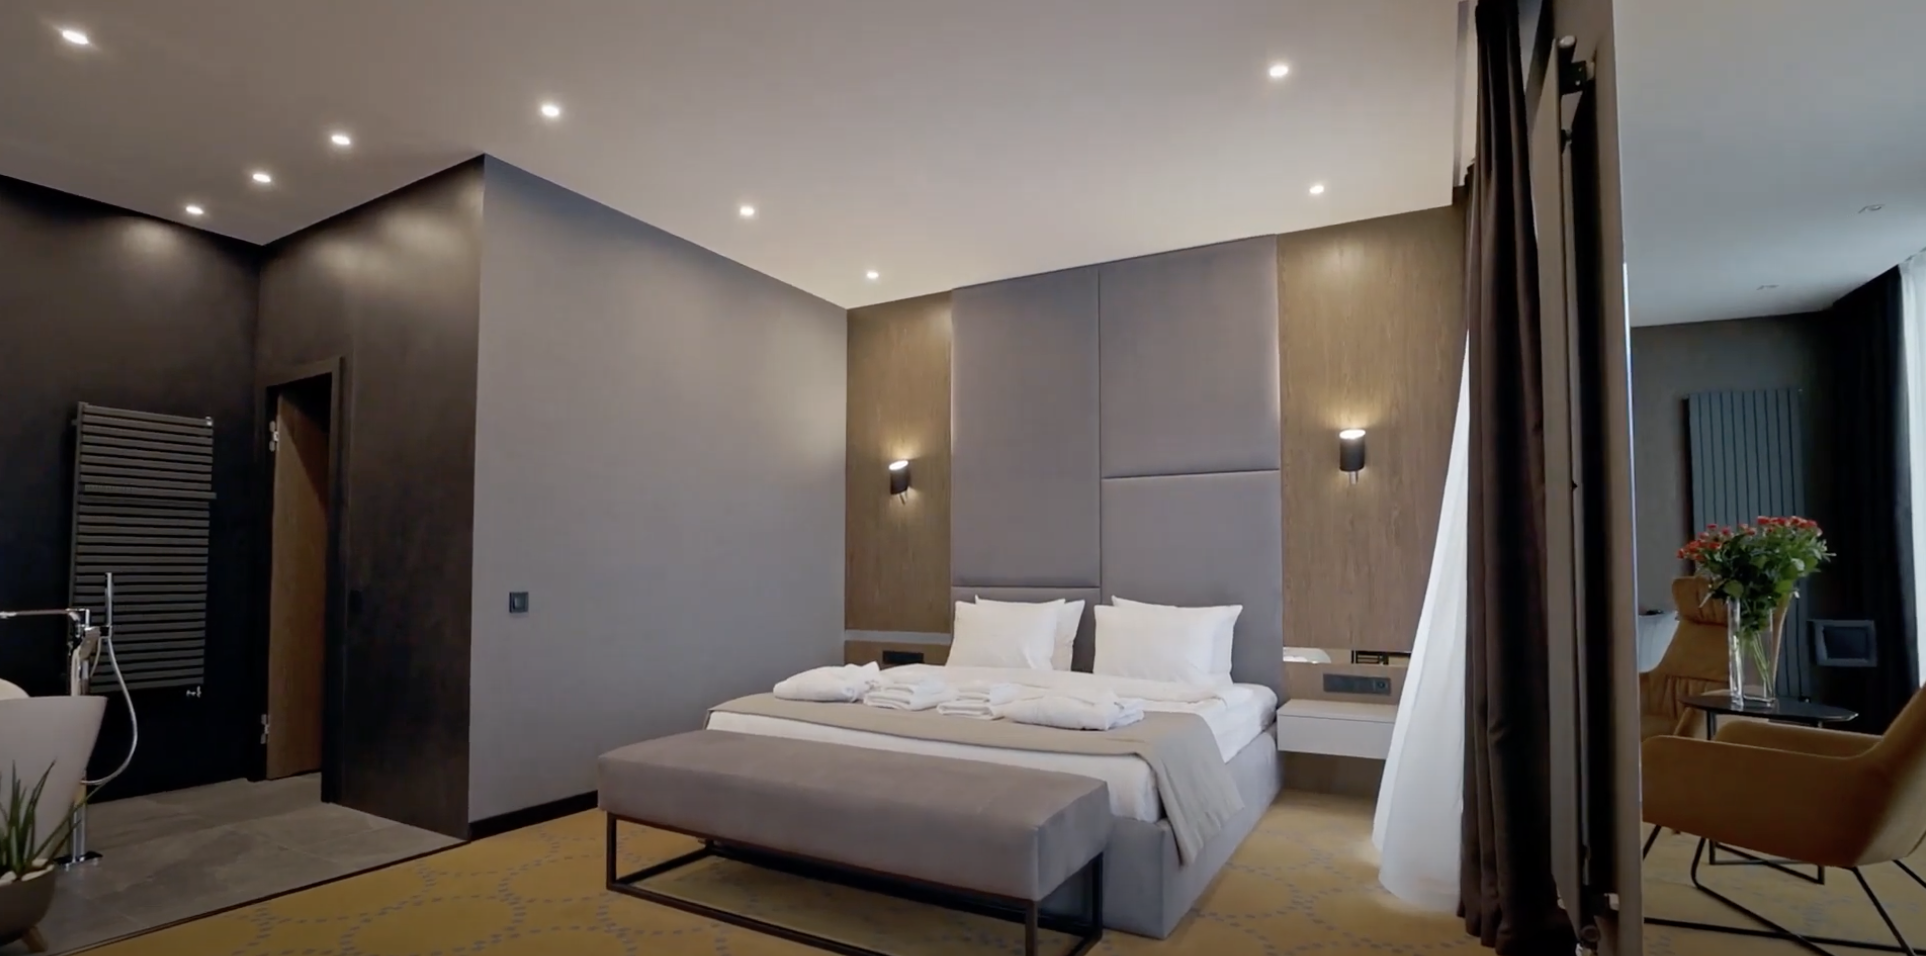 bedroom-bed-mattress turmerry